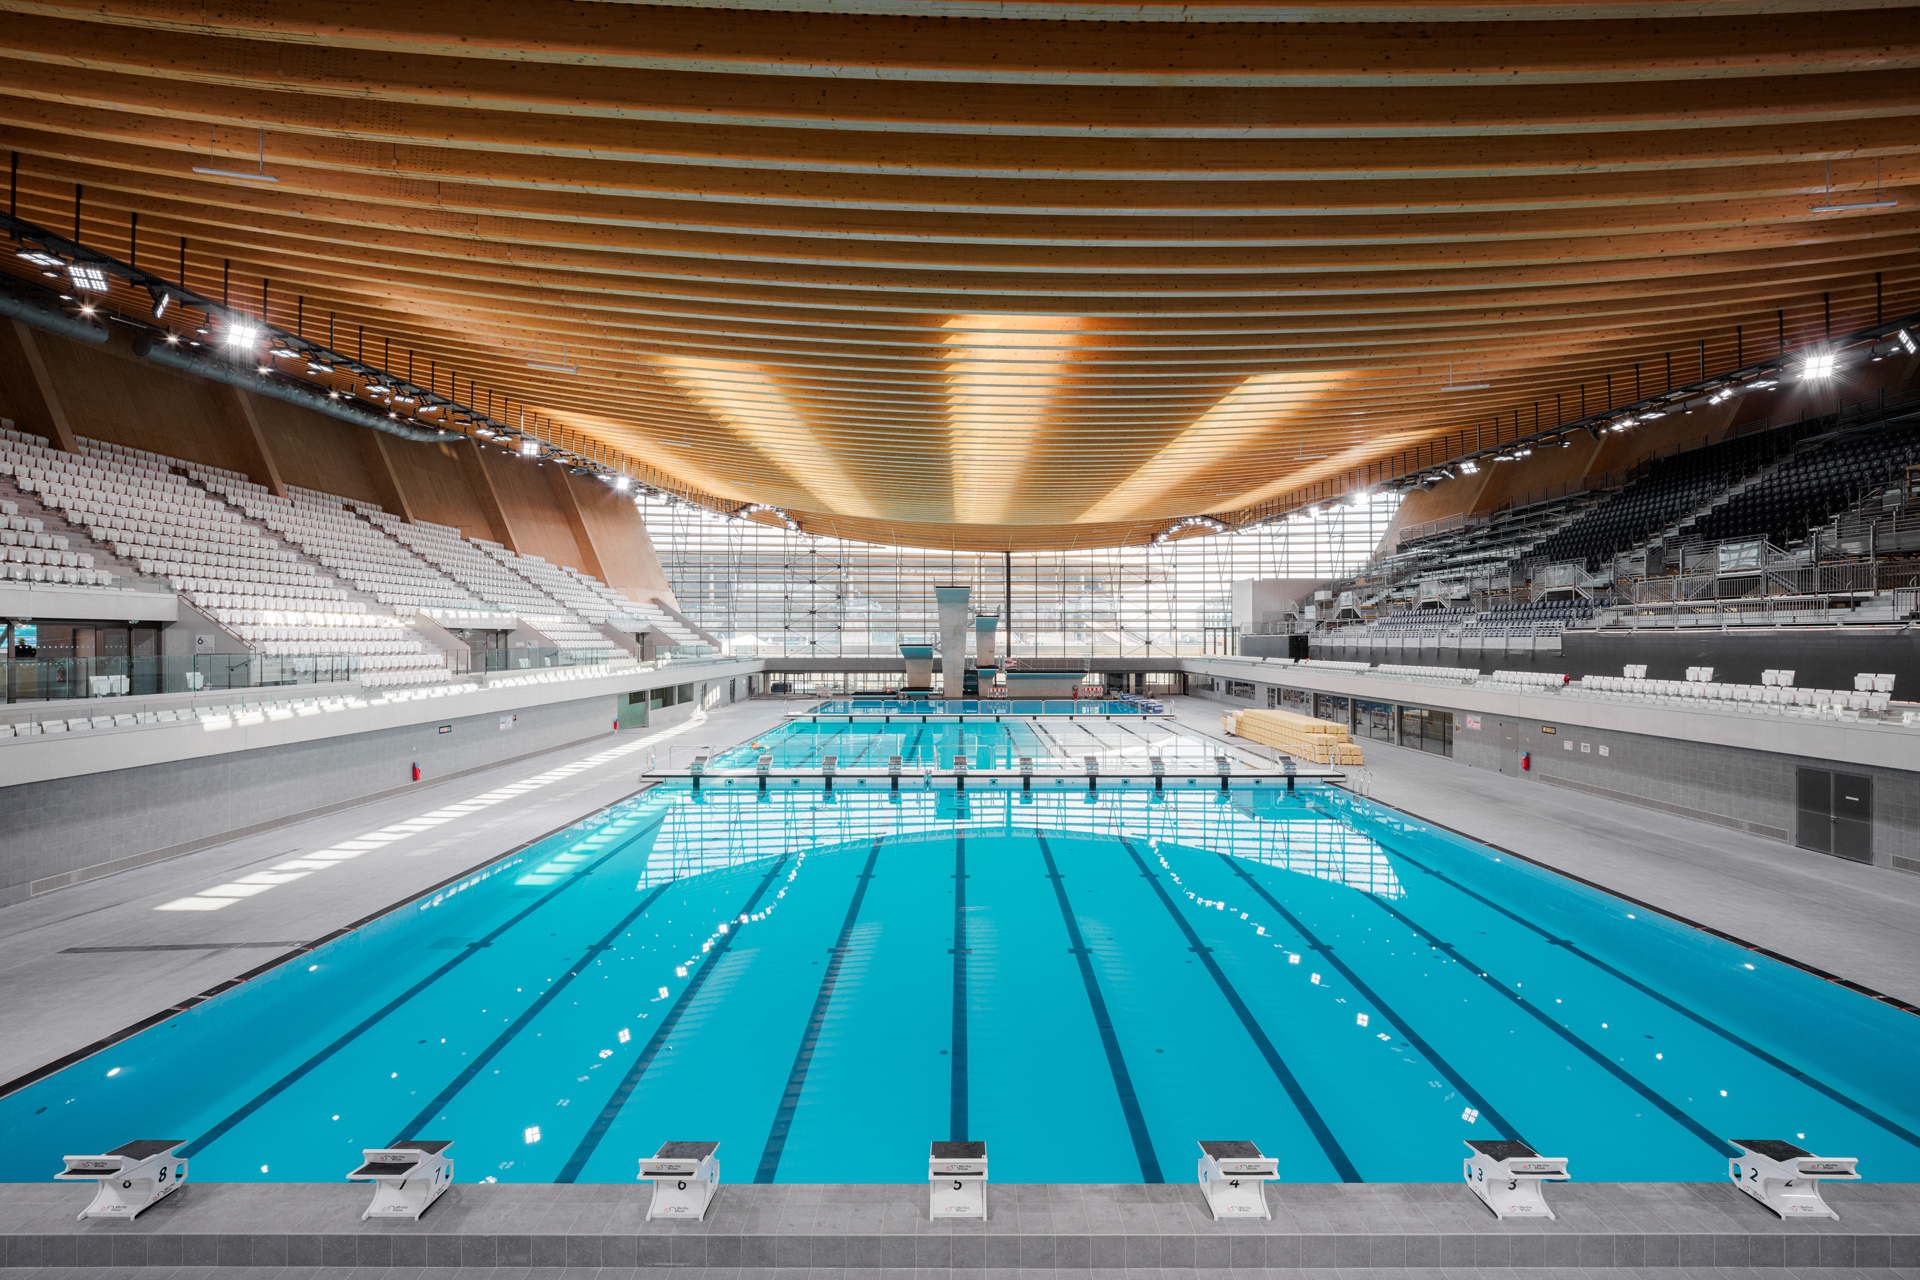 巴黎 Aquatics Centre 以木结构打造出的流线型屋顶，特别设计 5 道长条形天窗。